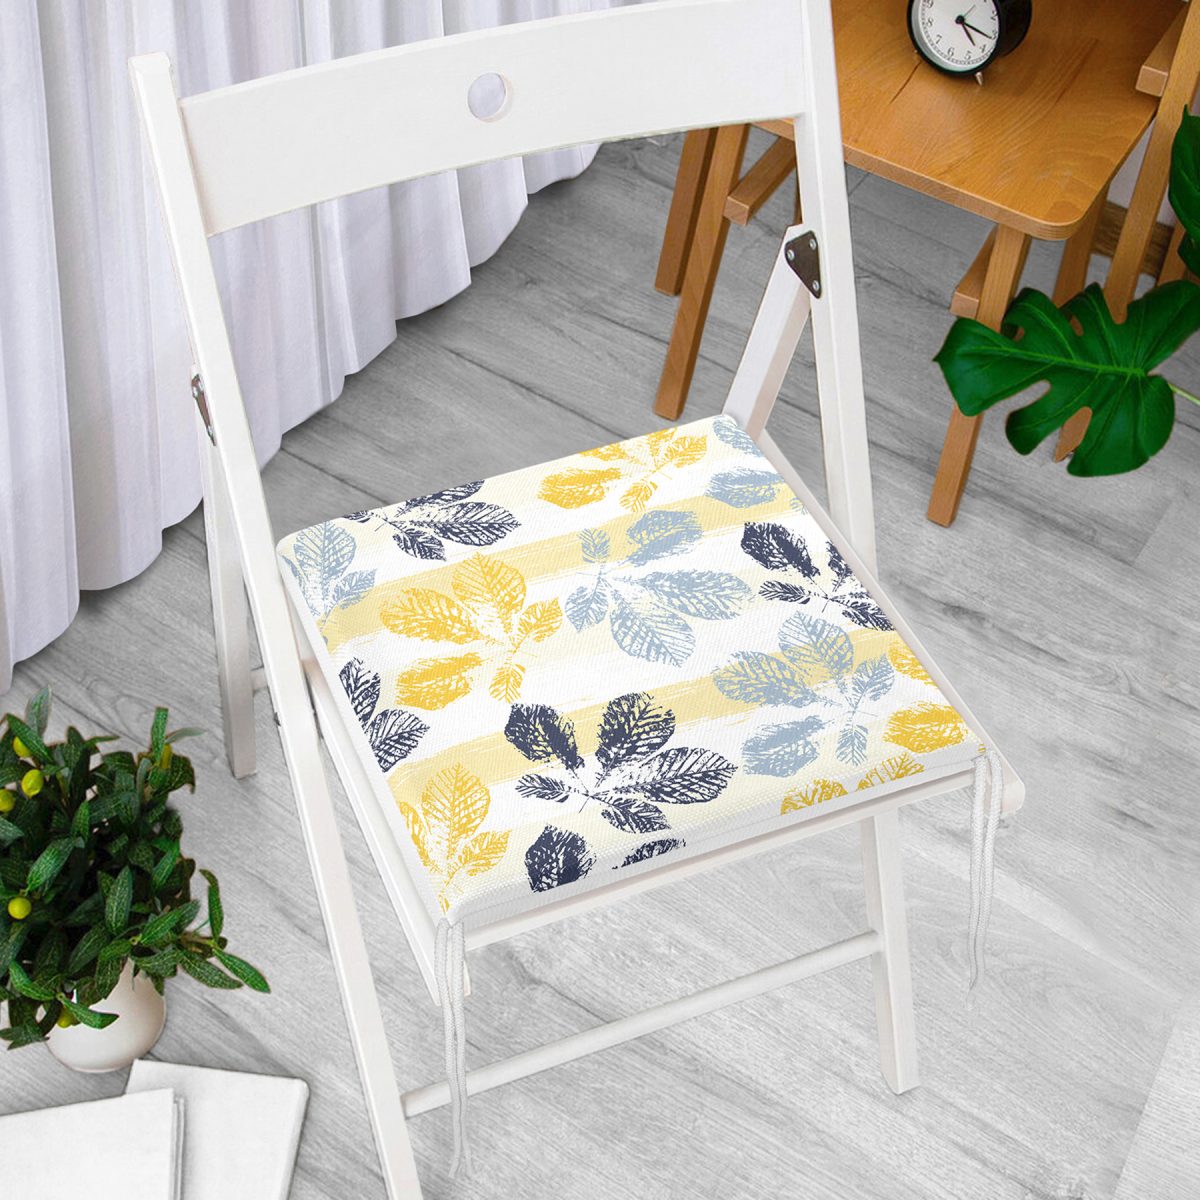 Beyaz Zemin Üzerinde Renkli Yaprak Desenli Dijital Baskılı Modern Fermuarlı Sandalye Minderi Realhomes